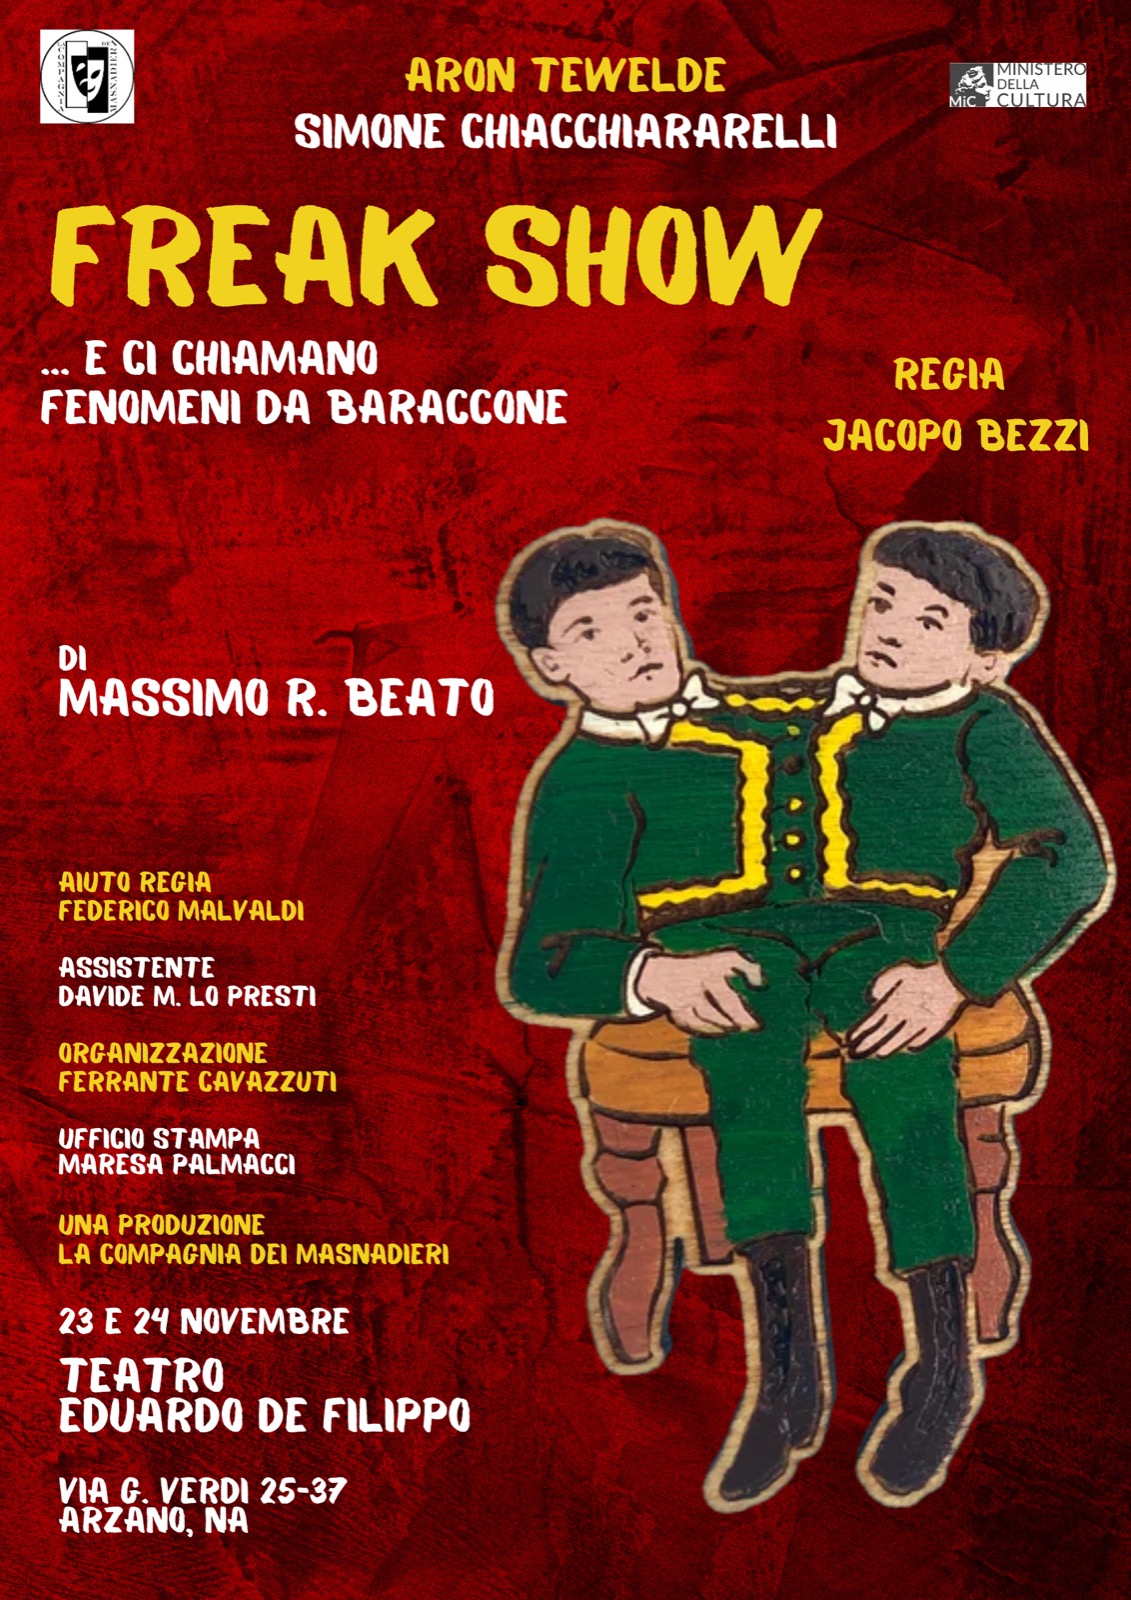 "Freak Show… E ci chiamano fenomeni da baraccone", di Massimo Roberto Beato al Teatro Eduardo De Filippo di Arzano